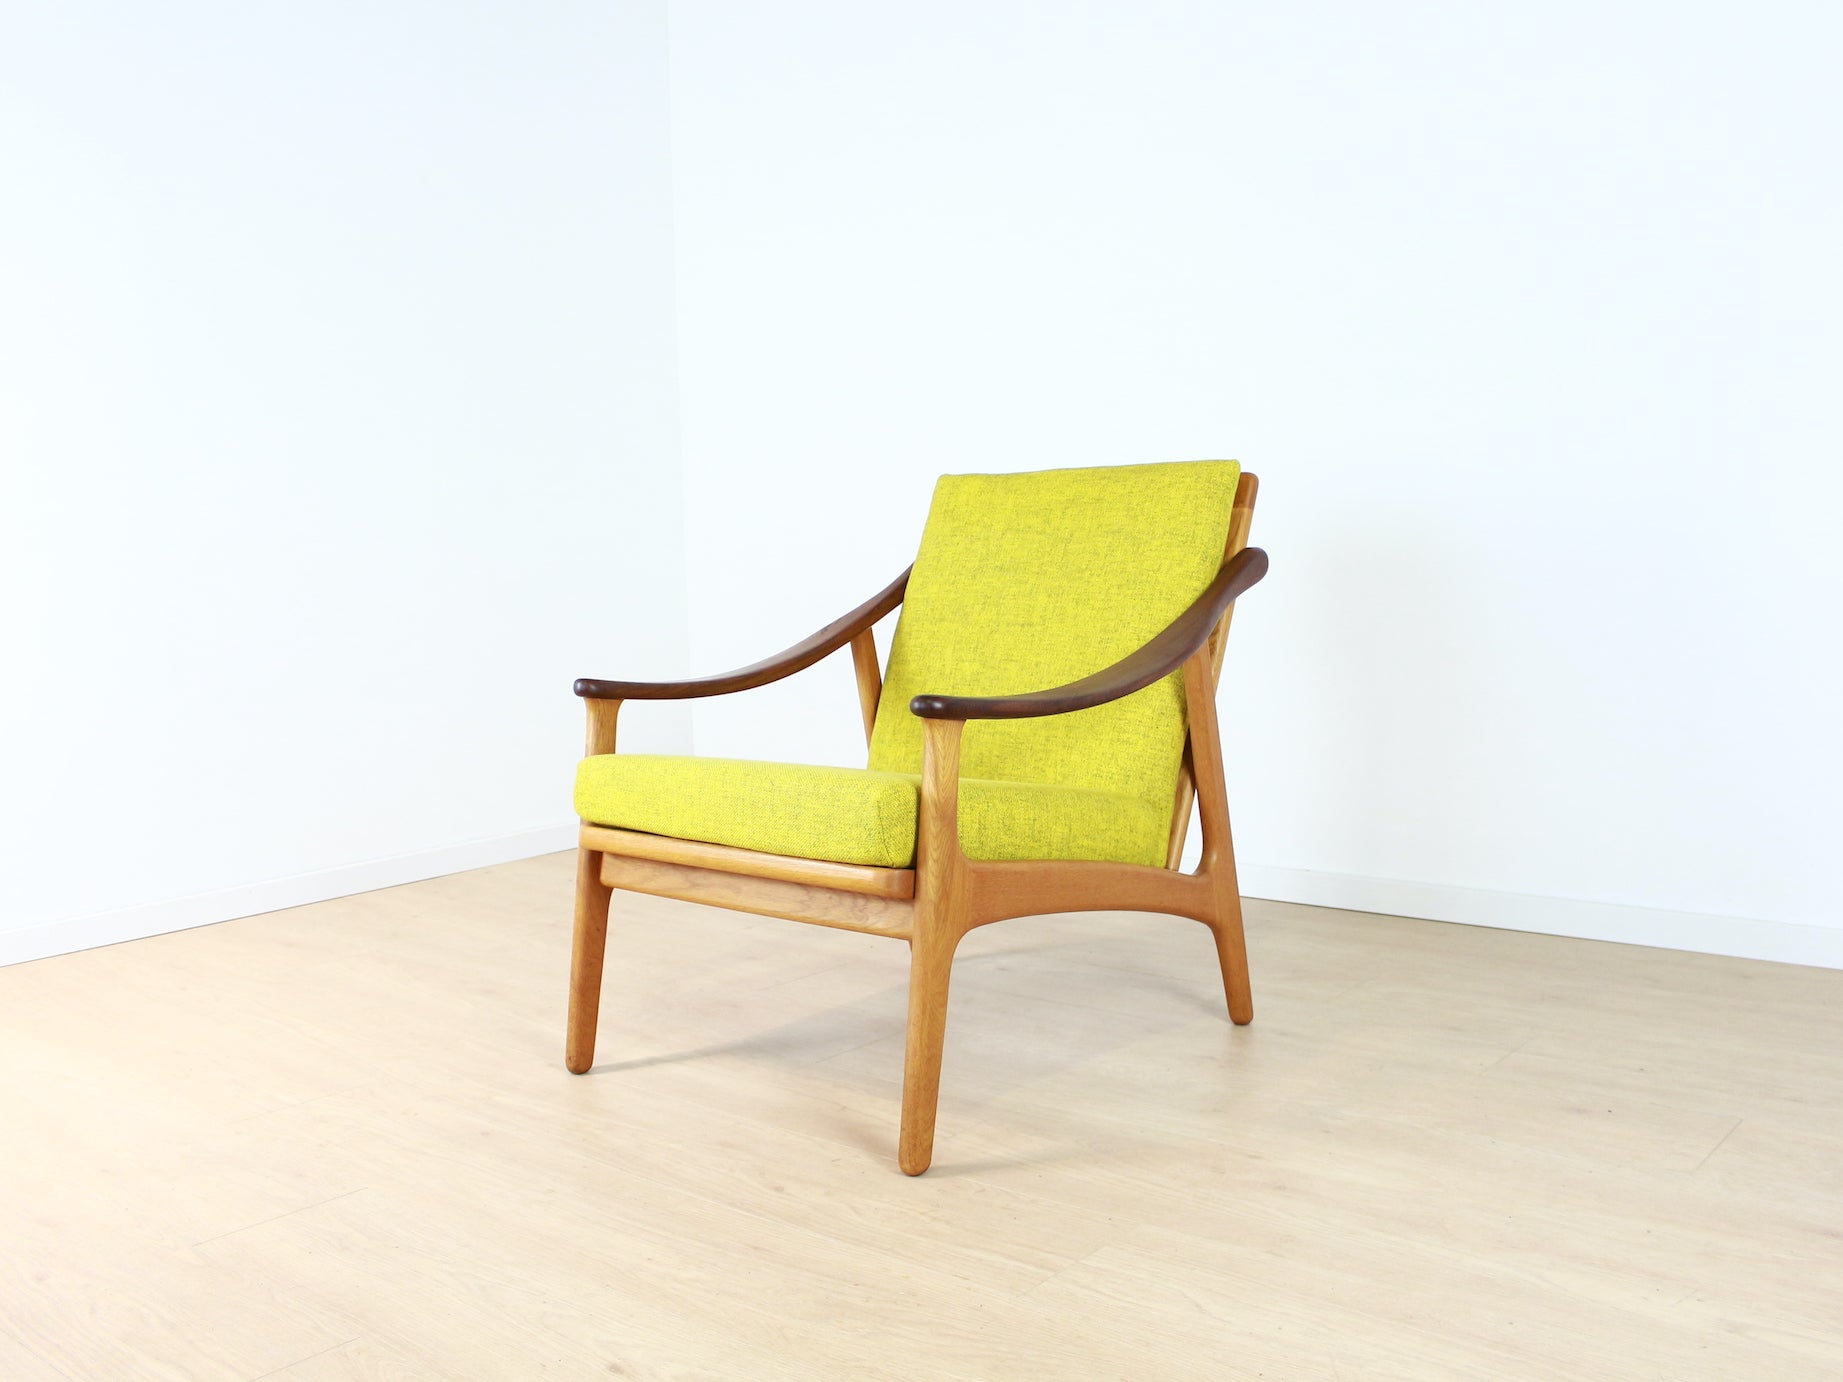 Installatie trek de wol over de ogen verlichten vintage fauteuil – Pakhuis53